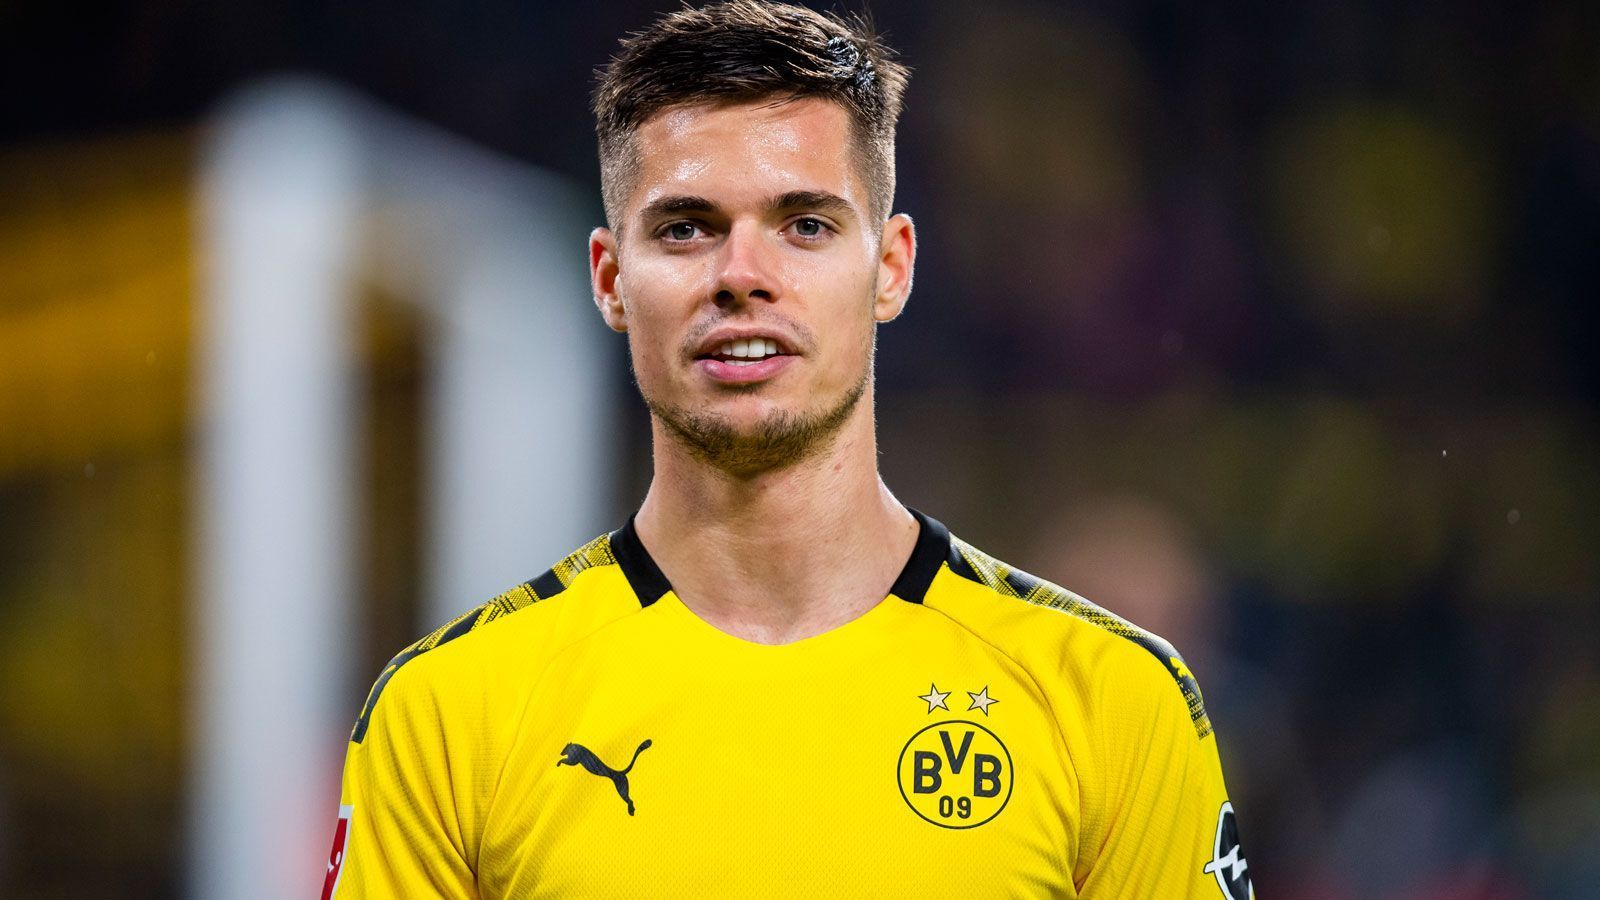 
                <strong>Julian Weigl (Borussia Dortmund)</strong><br>
                Der ehemalige Münchner Löwe müht sich, um dem BVB-Spiel Struktur zu verschaffen. Dabei ist er zumeist auf Sicherheit bedacht. Sein Kopfball von der Strafraumgrenze ist nicht mehr als ein Verlegenheitsversuch. ran-Note: 3
              